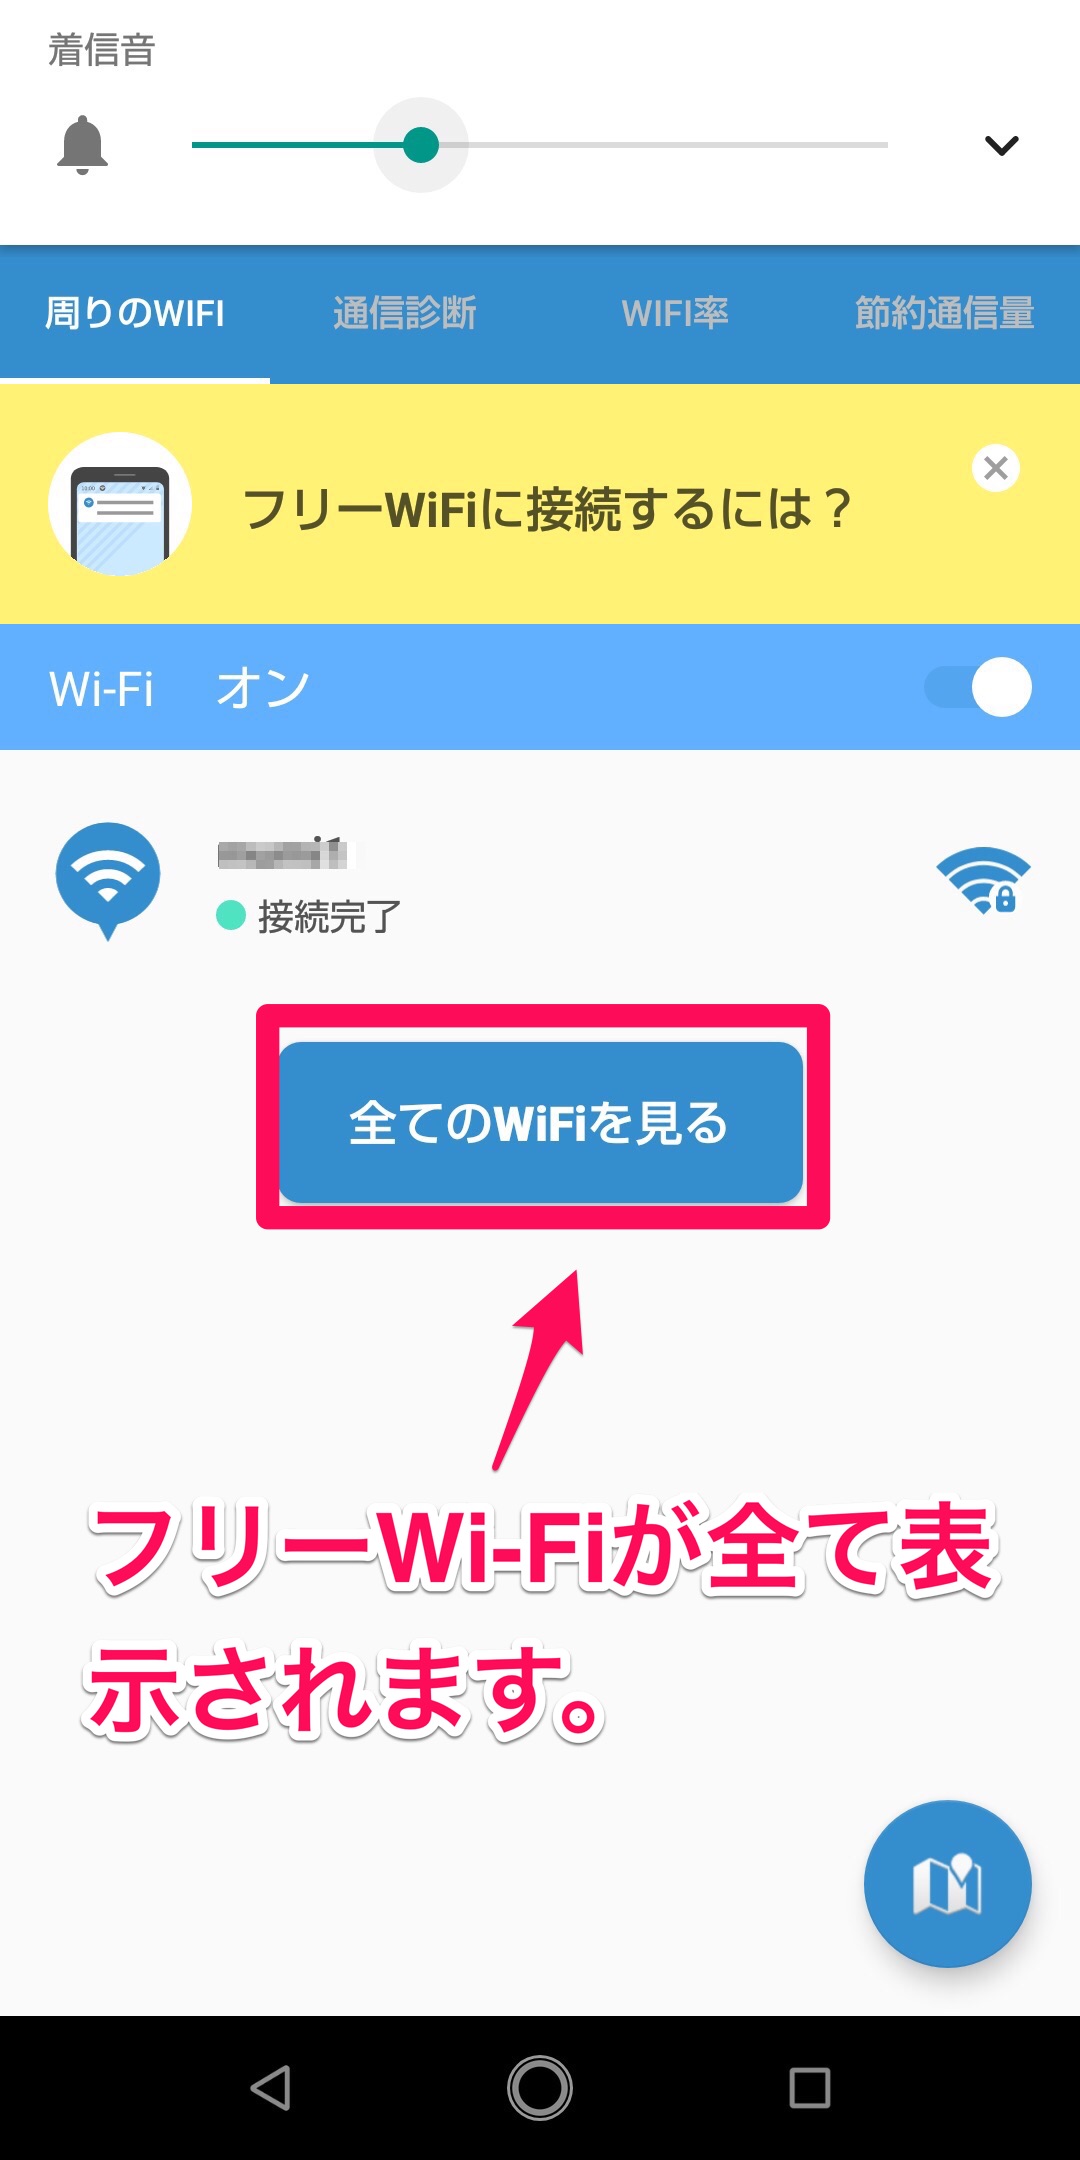 Town WiFi